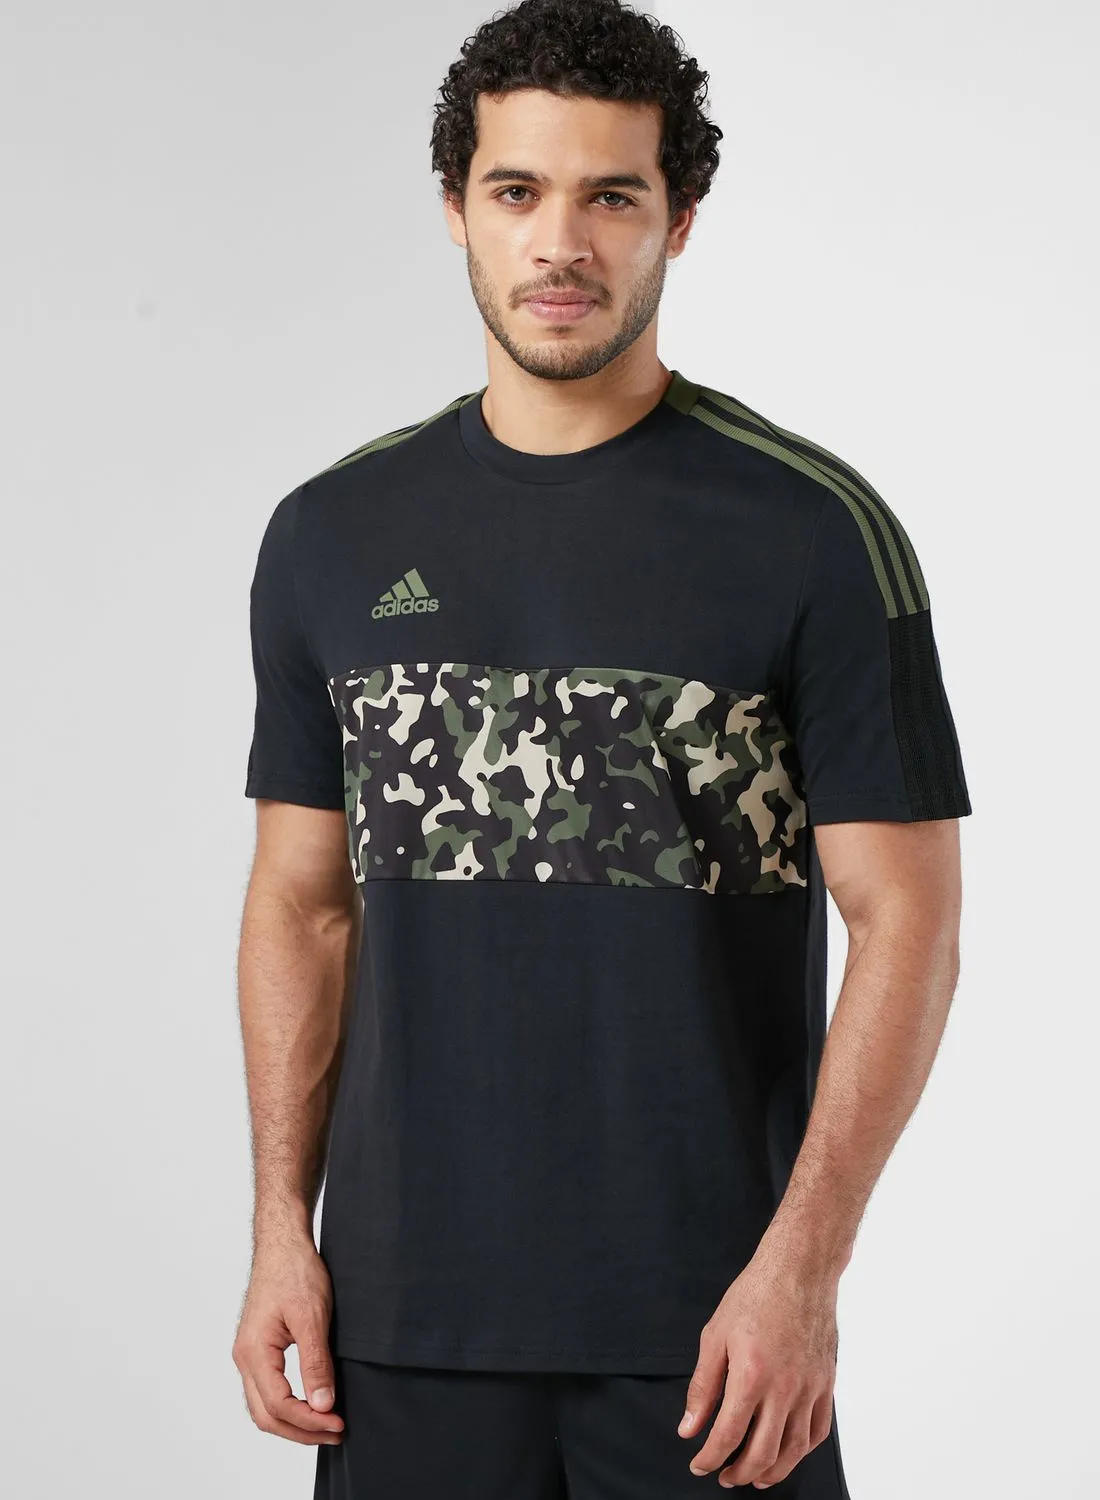 Adidas Tiro AOP T-Shirt